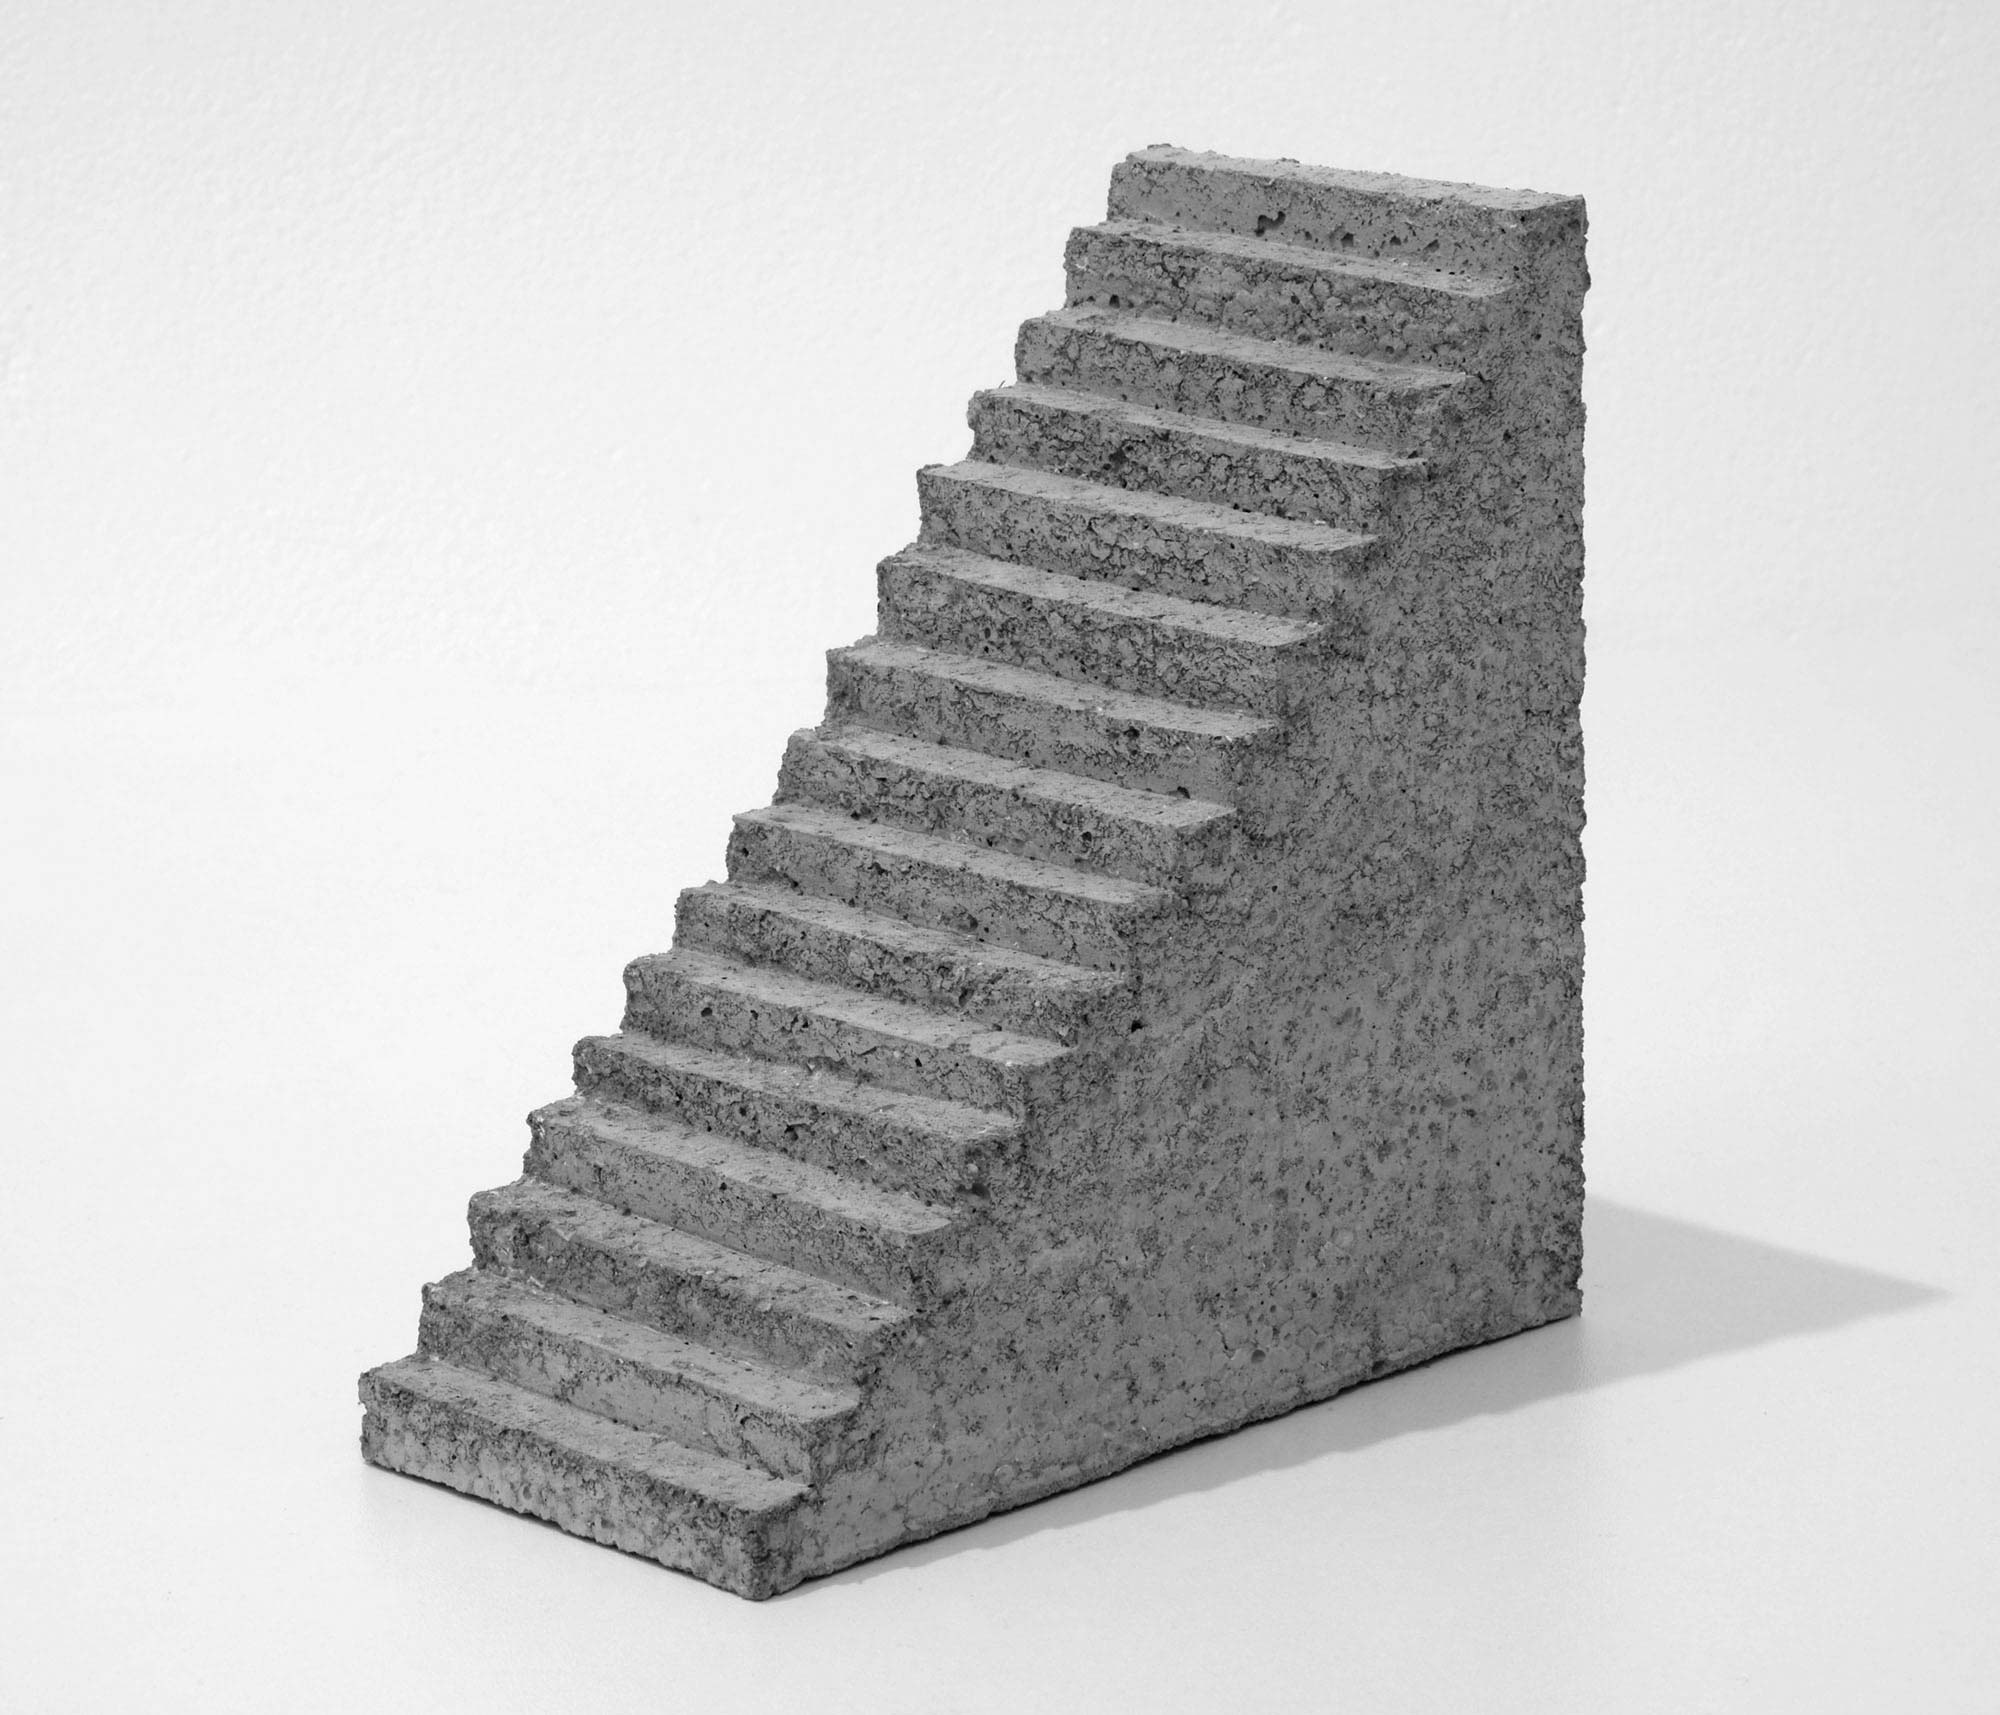 mattia listowski art design objet décoration sculpture béton moulage micro architecture maquette escalier édition limitée numérotée signée paris bruxelles 2019